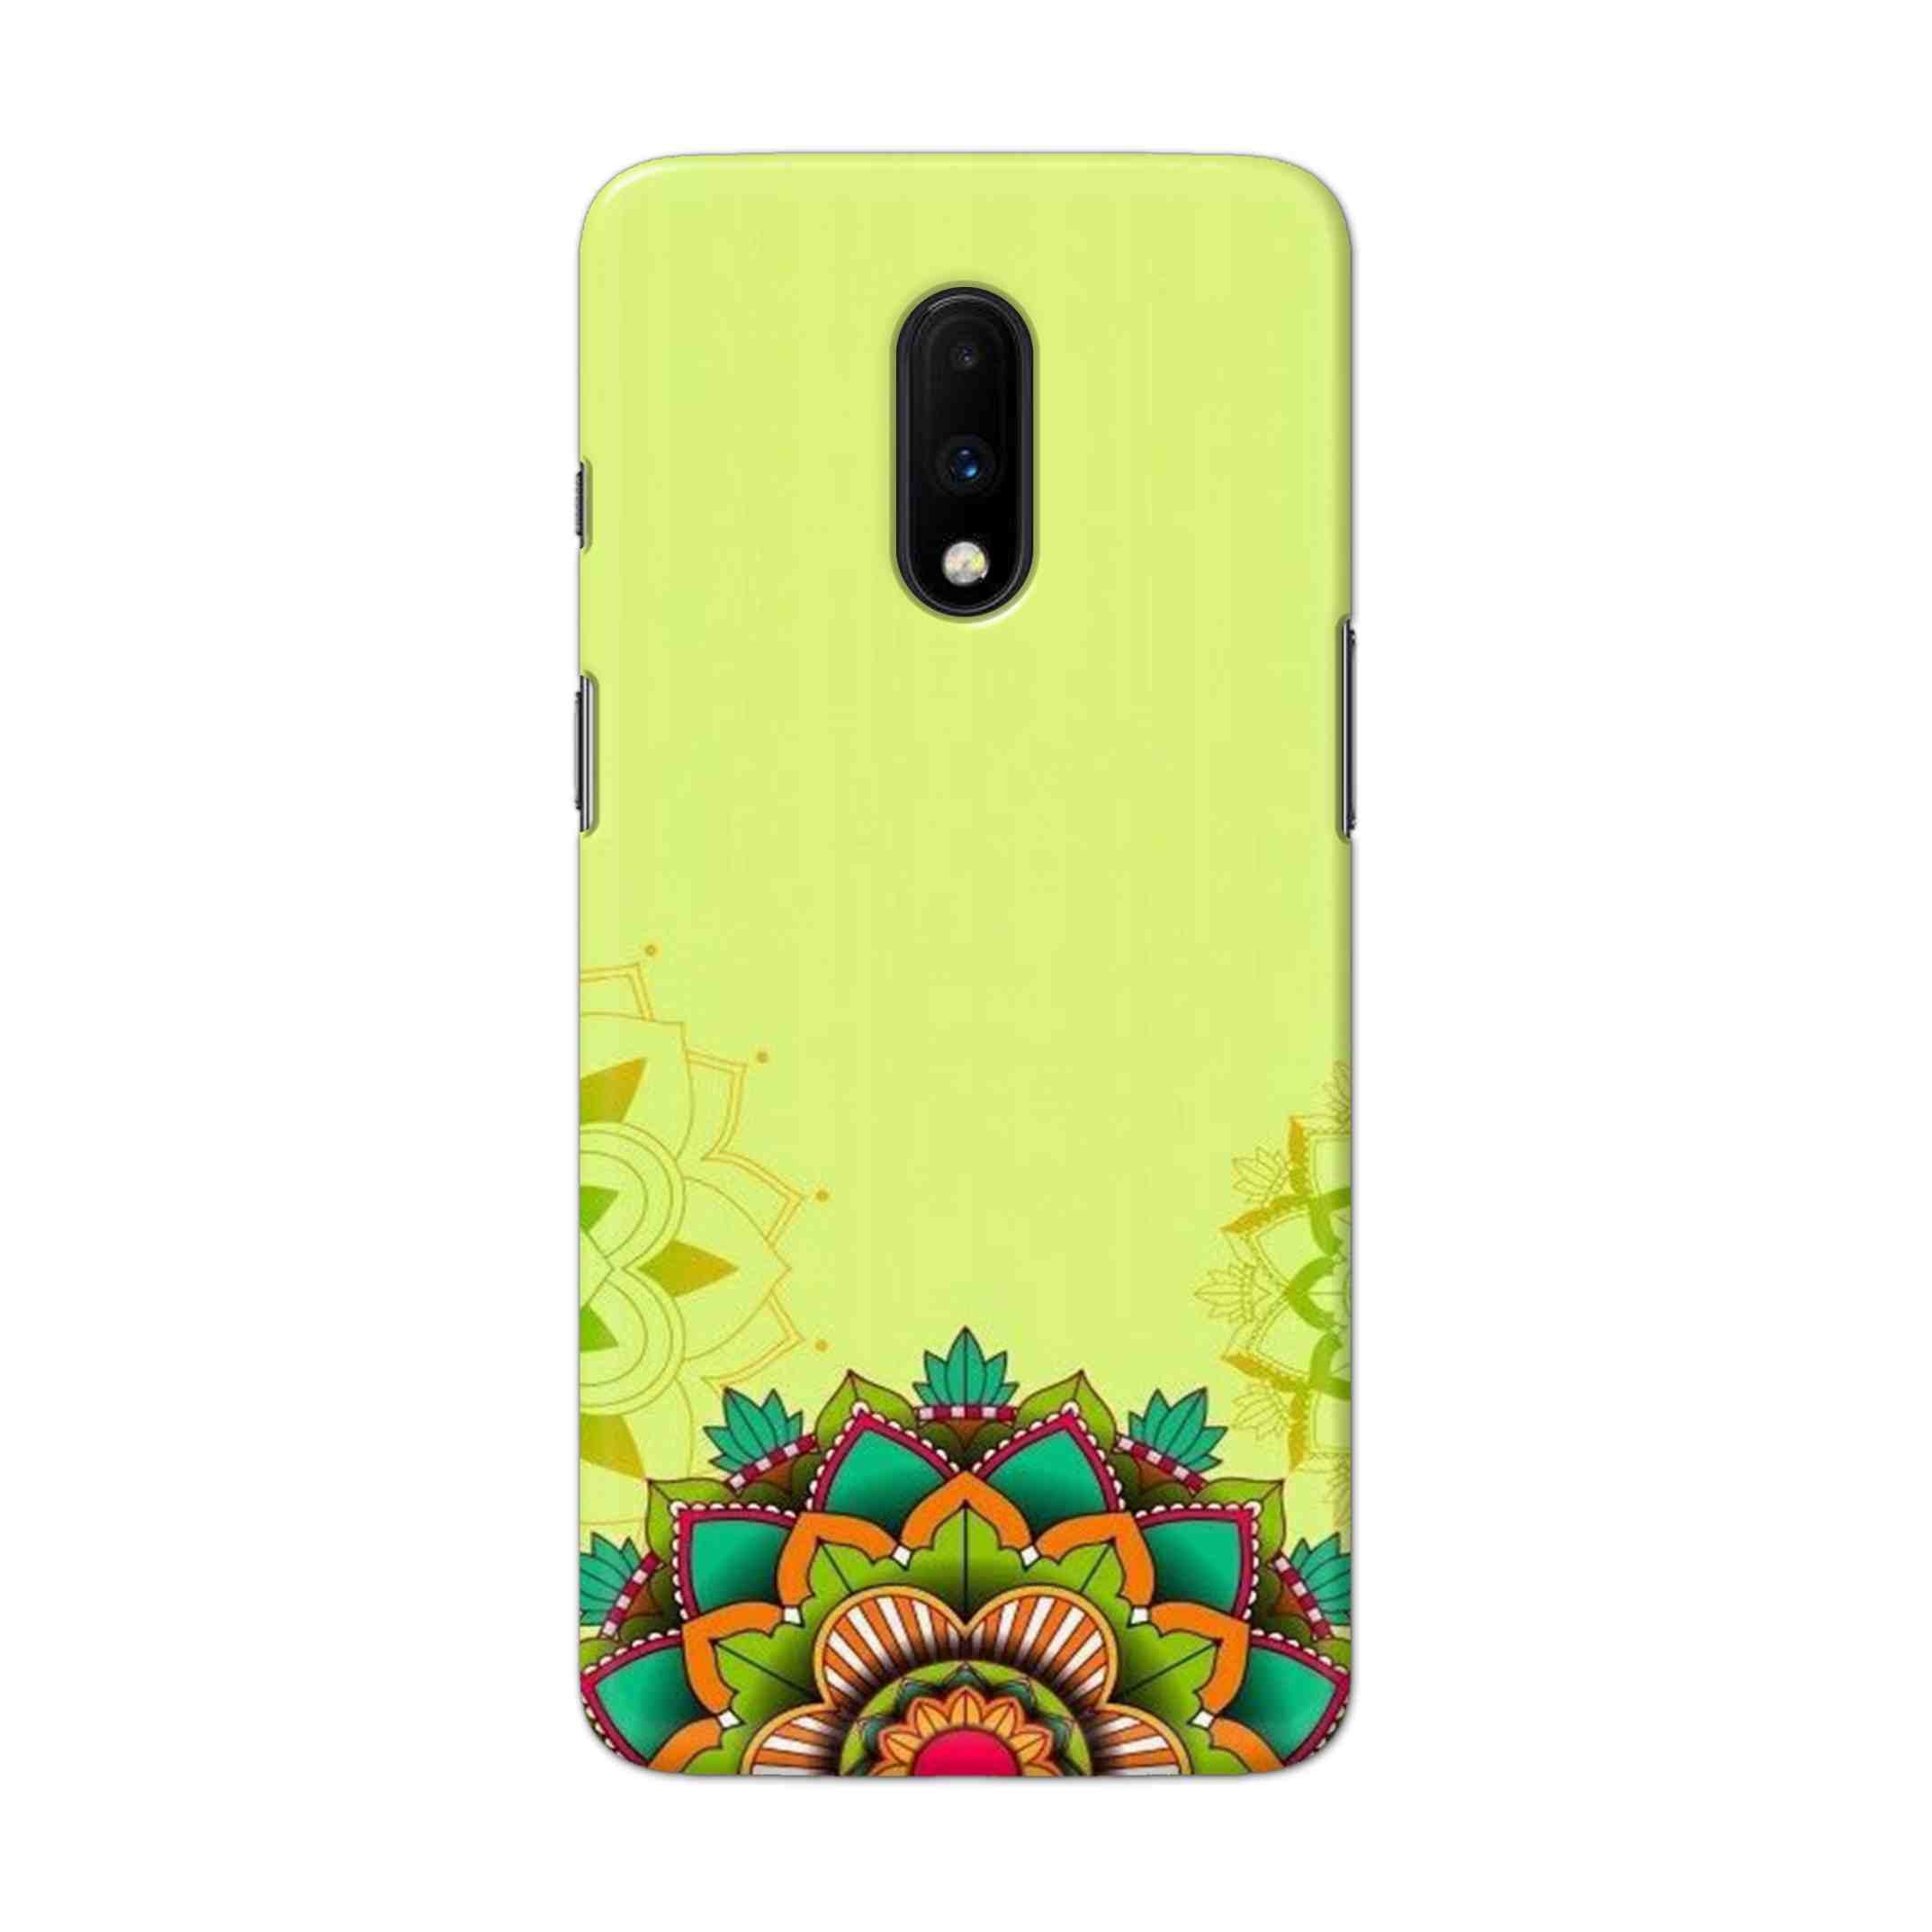 Buy Flower Mandala Hard Back Mobile Phone Case Cover For OnePlus 7 Online